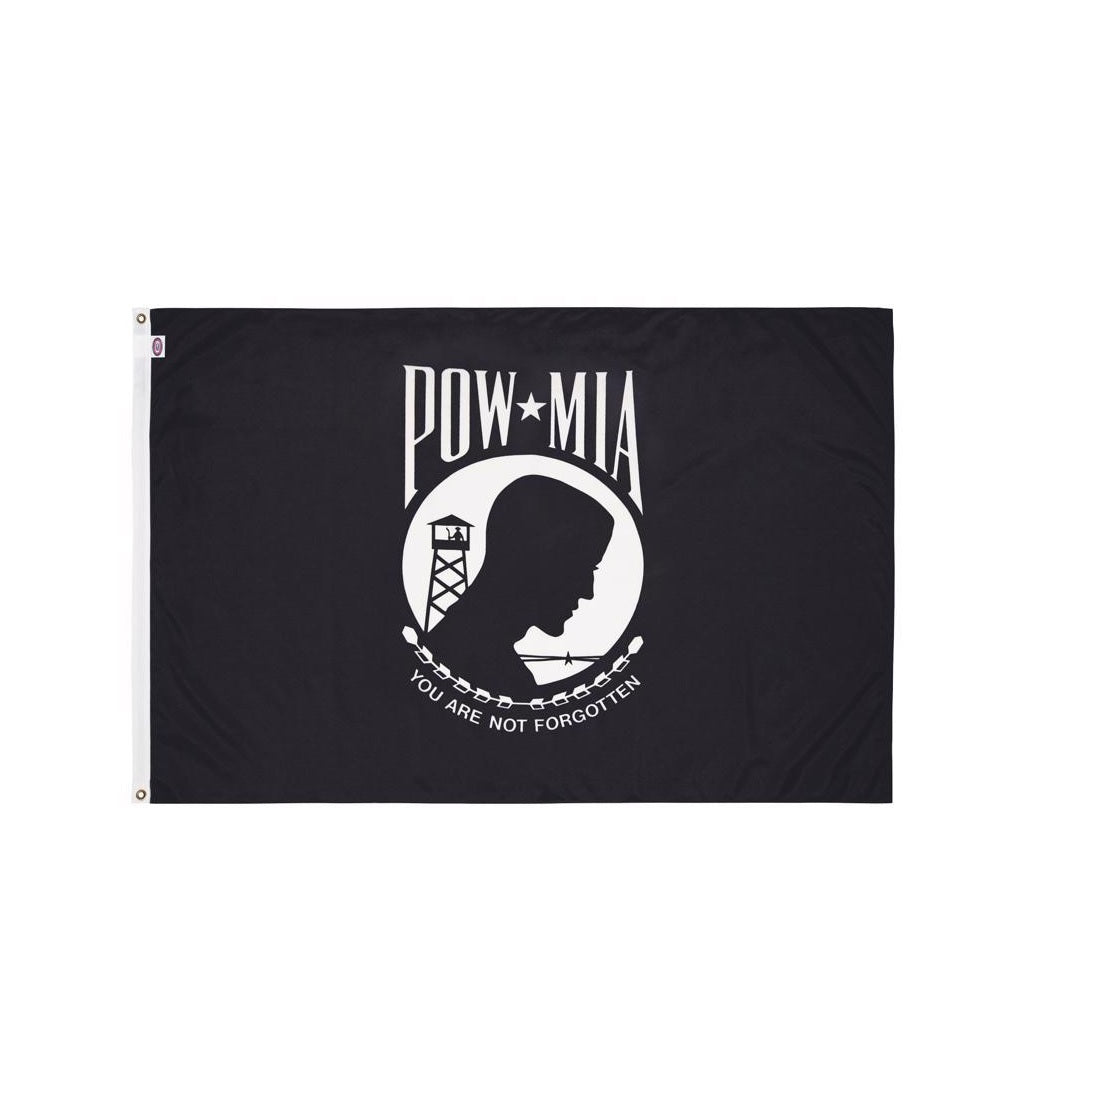 Valley Forge BTPOW3 Pow-Mia Militaryy Flag, Nylon